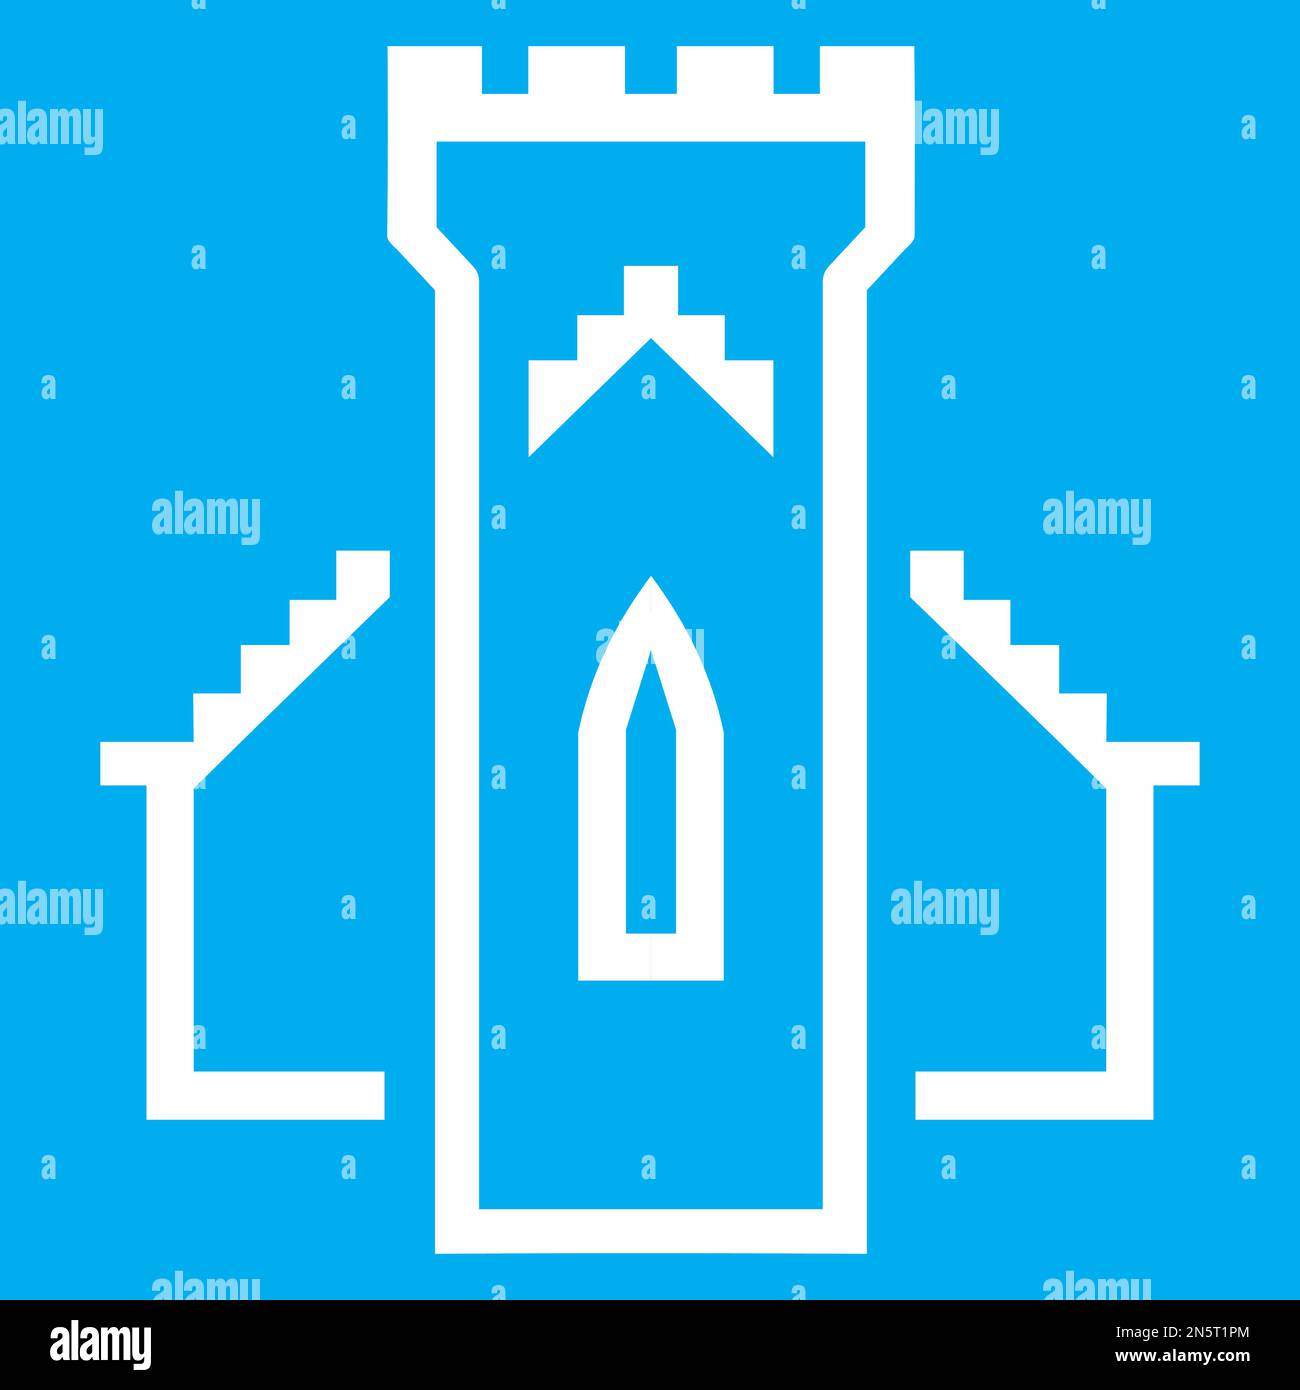 Blau-weiße Vektorgrafik eines Kartensymbols für eine historische Stätte in Schottland. Es besteht aus einer Kirche und einer Burg, die miteinander verschmolzen sind Stock Vektor